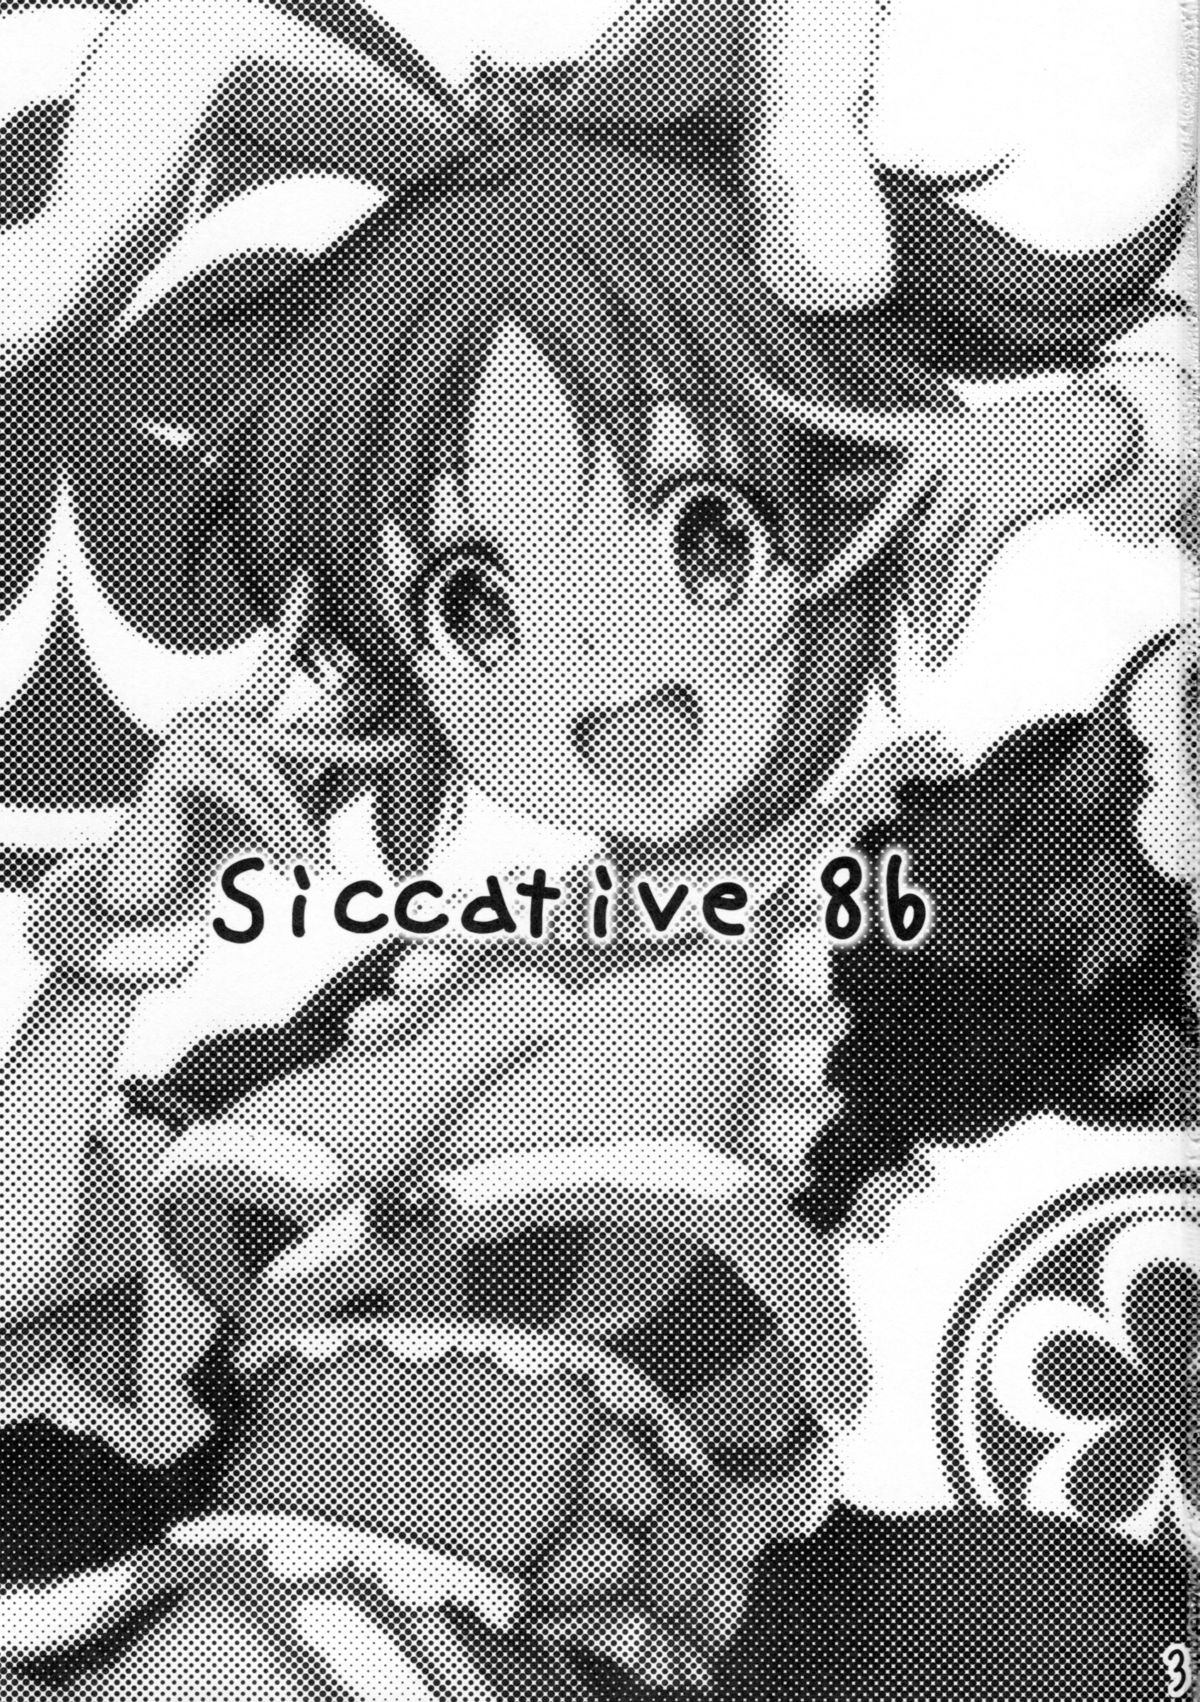 (C86) [ウルトラシッカチーフ (pu2、朝倉ブルー)] Siccative 86 (アイドルマスター シンデレラガールズ)